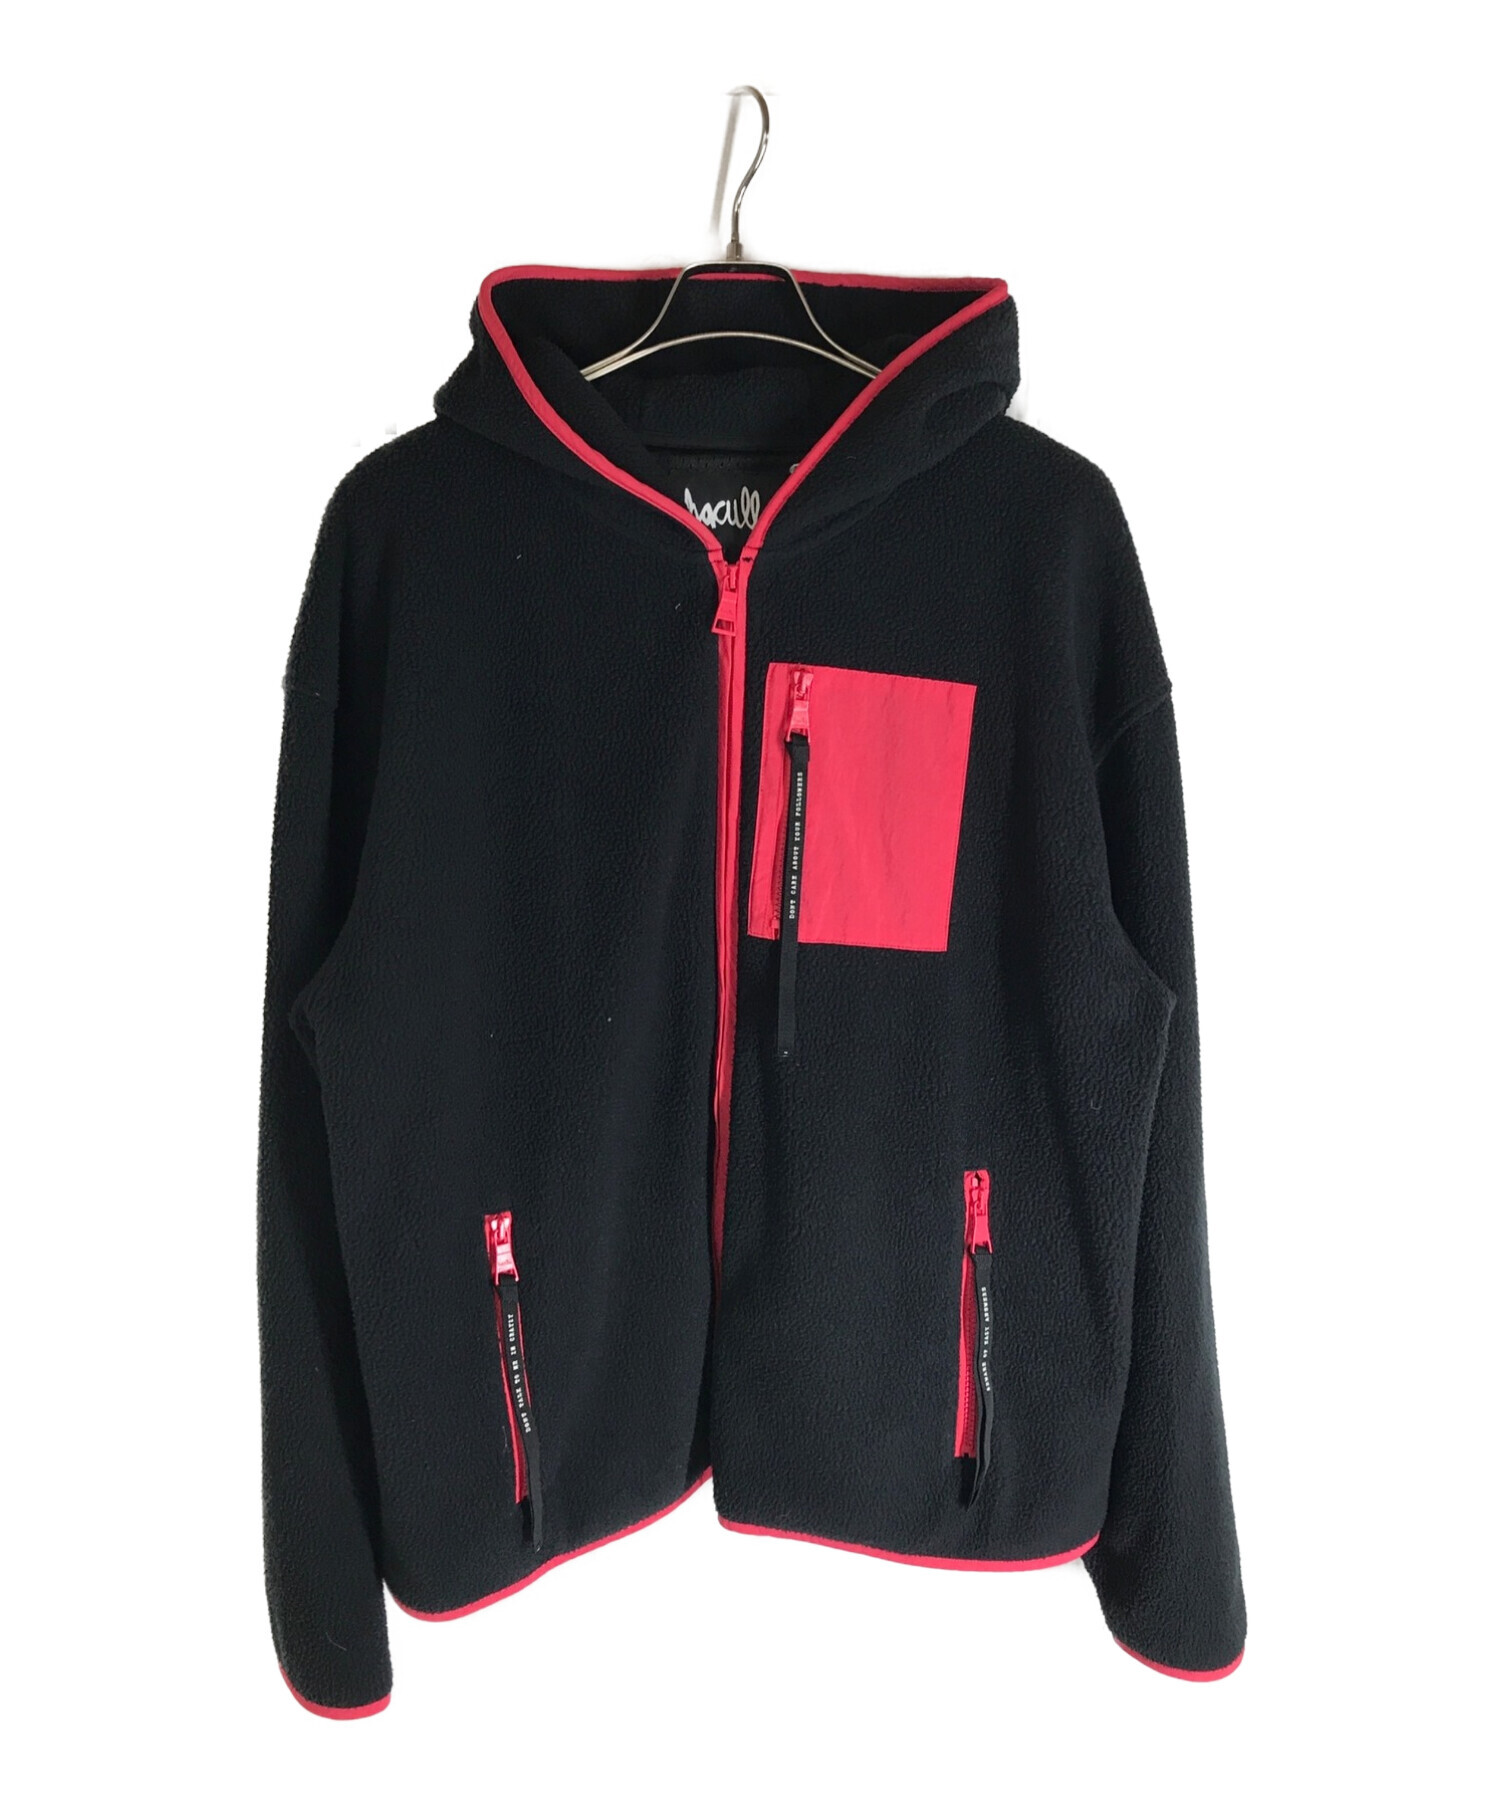 haculla (ハキュラ) フーデッドフリースジャケット ブラック×ピンク サイズ:L